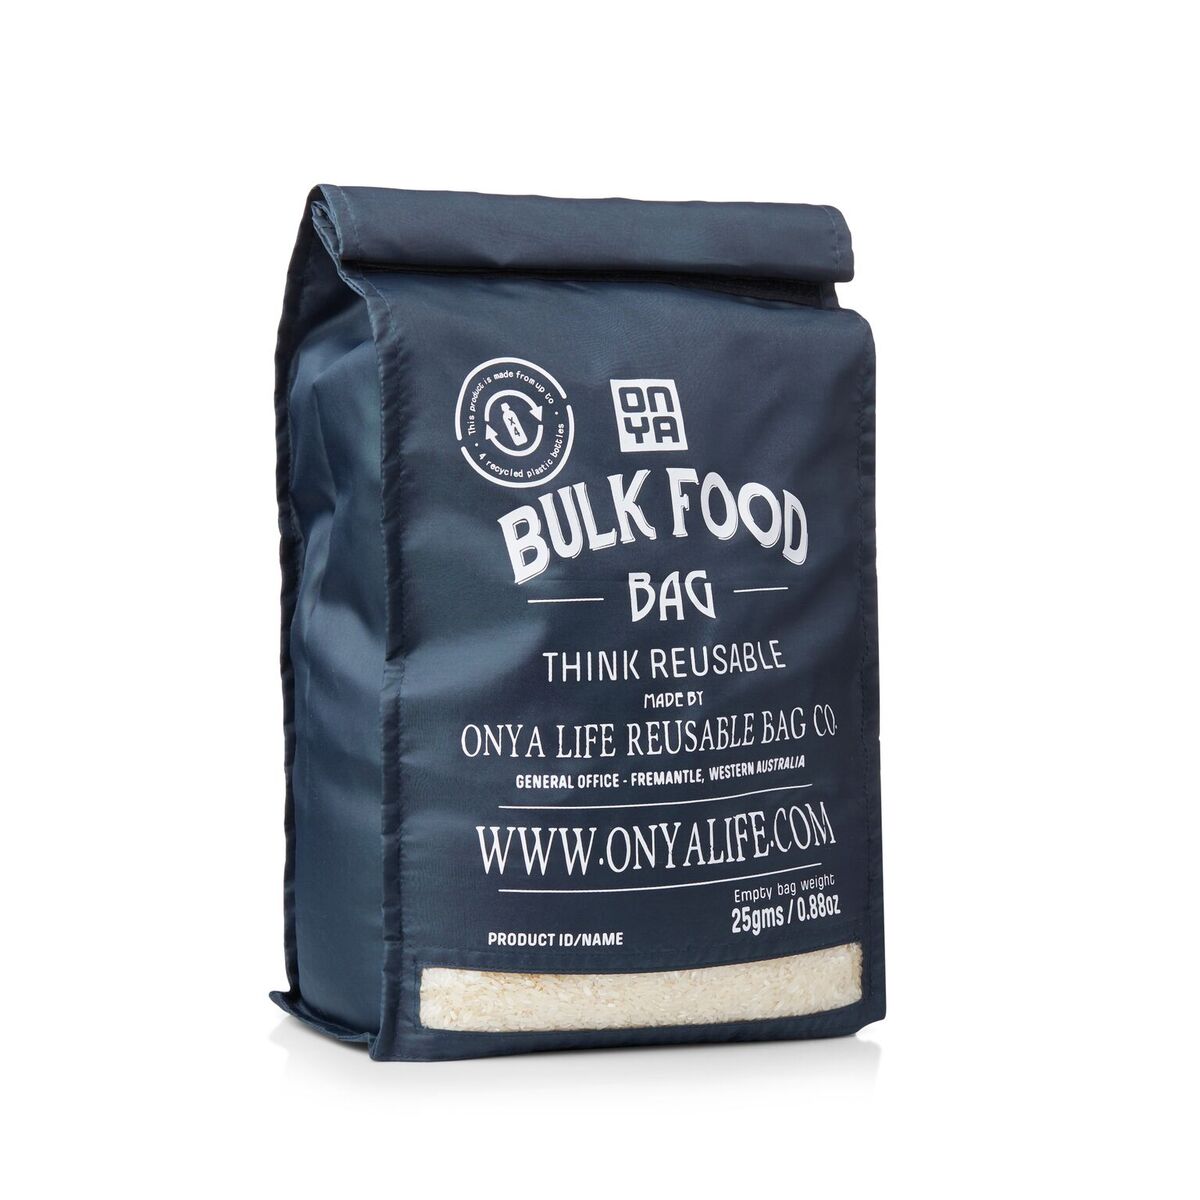 ONYA Bulk Food Bag Starter Kit Charcoal Product Image 1